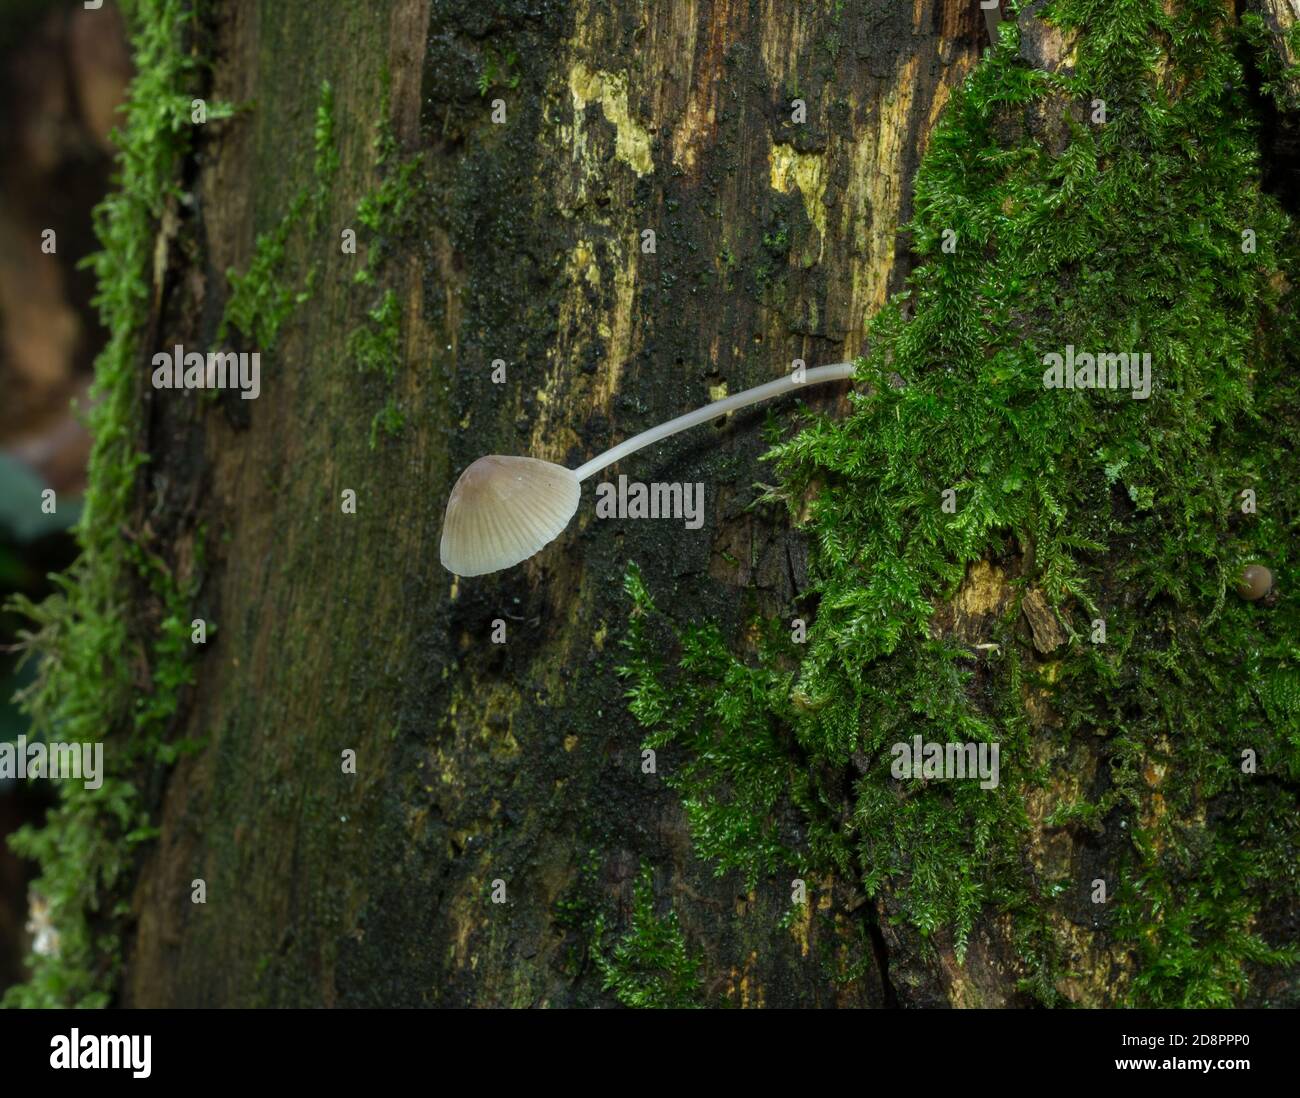 Der gemeine Haubenpilz oder mycena galericulata, der aus einem verfallenden Baumstamm wächst. Stockfoto